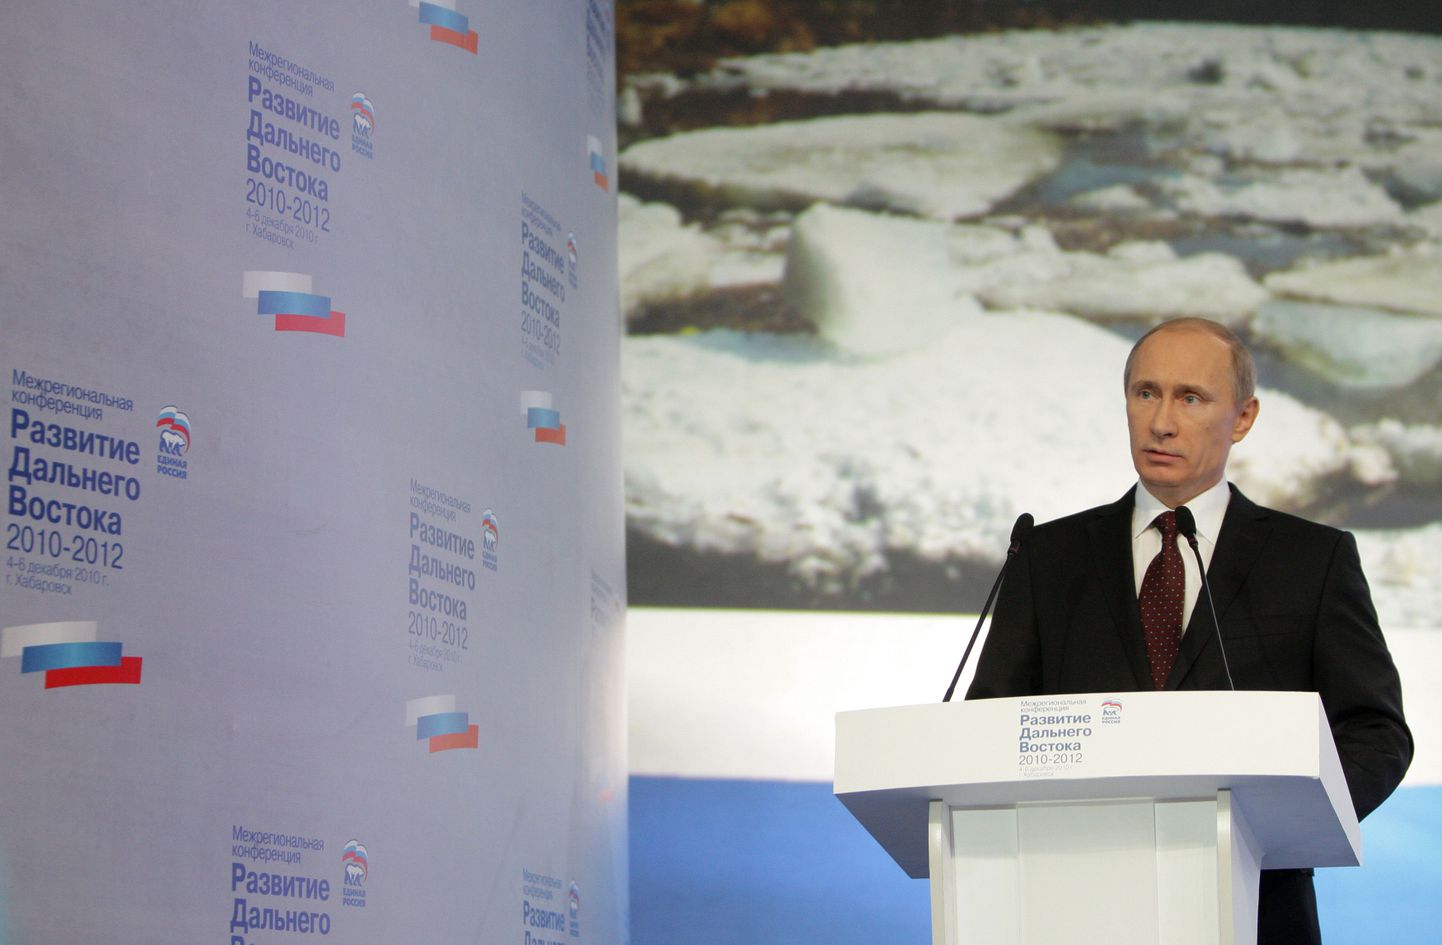 Vladimir Putin Habarovskis Ühtse Venemaa regionaalsel konverentsil.